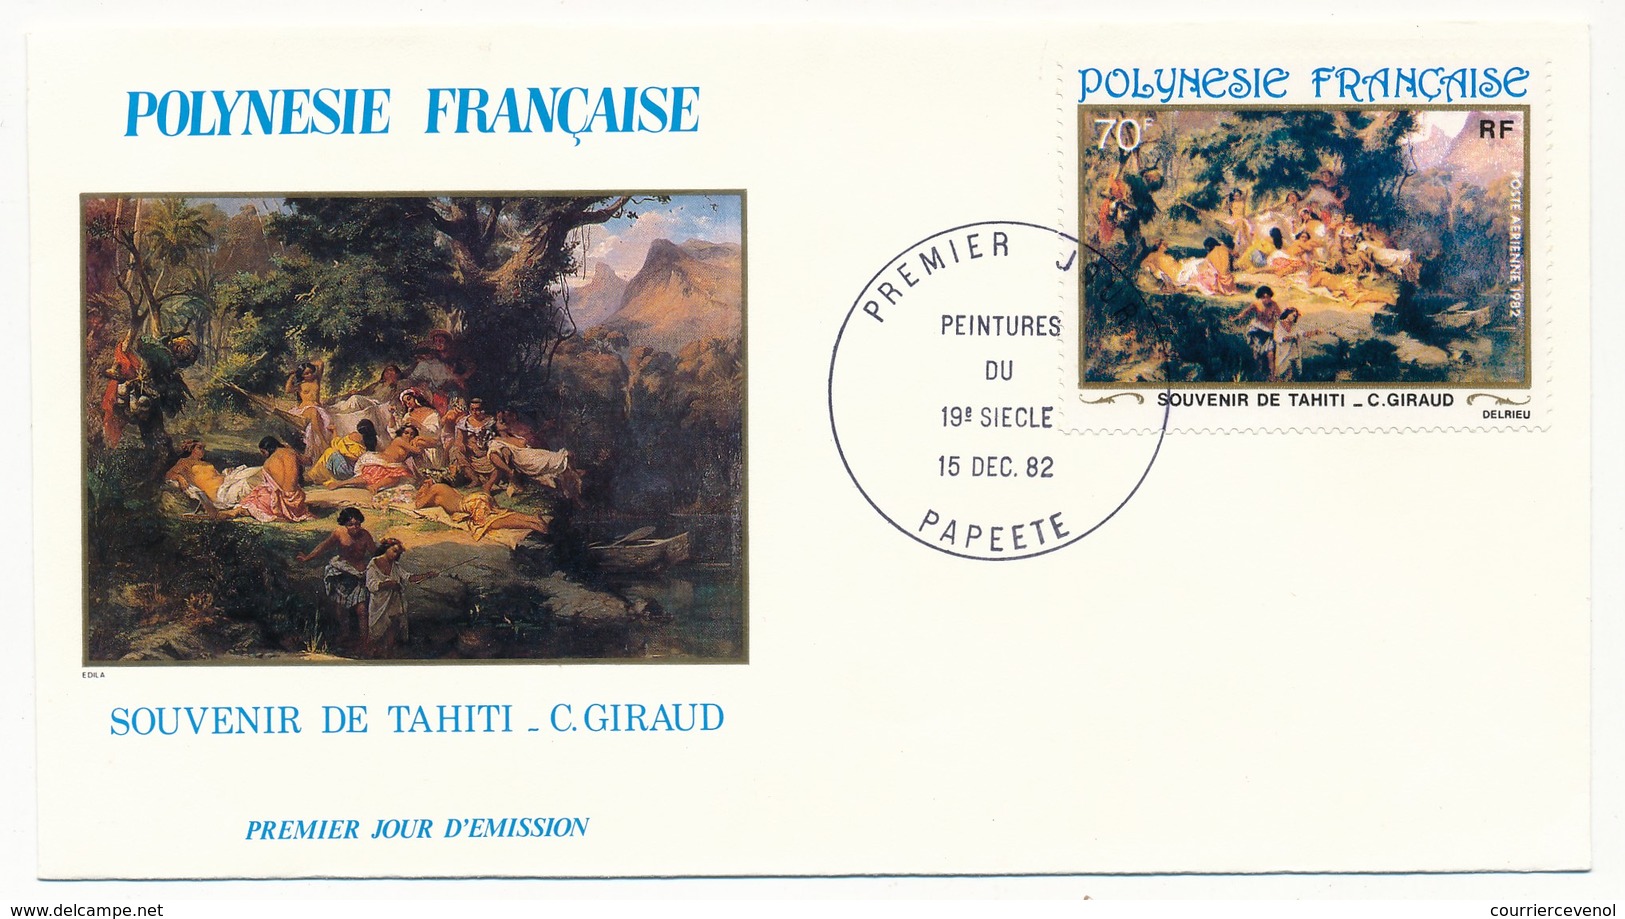 POLYNESIE FRANCAISE - 4 FDC - Peintures Du 19eme Siècle - 15 Dec 1982 - Papeete - FDC